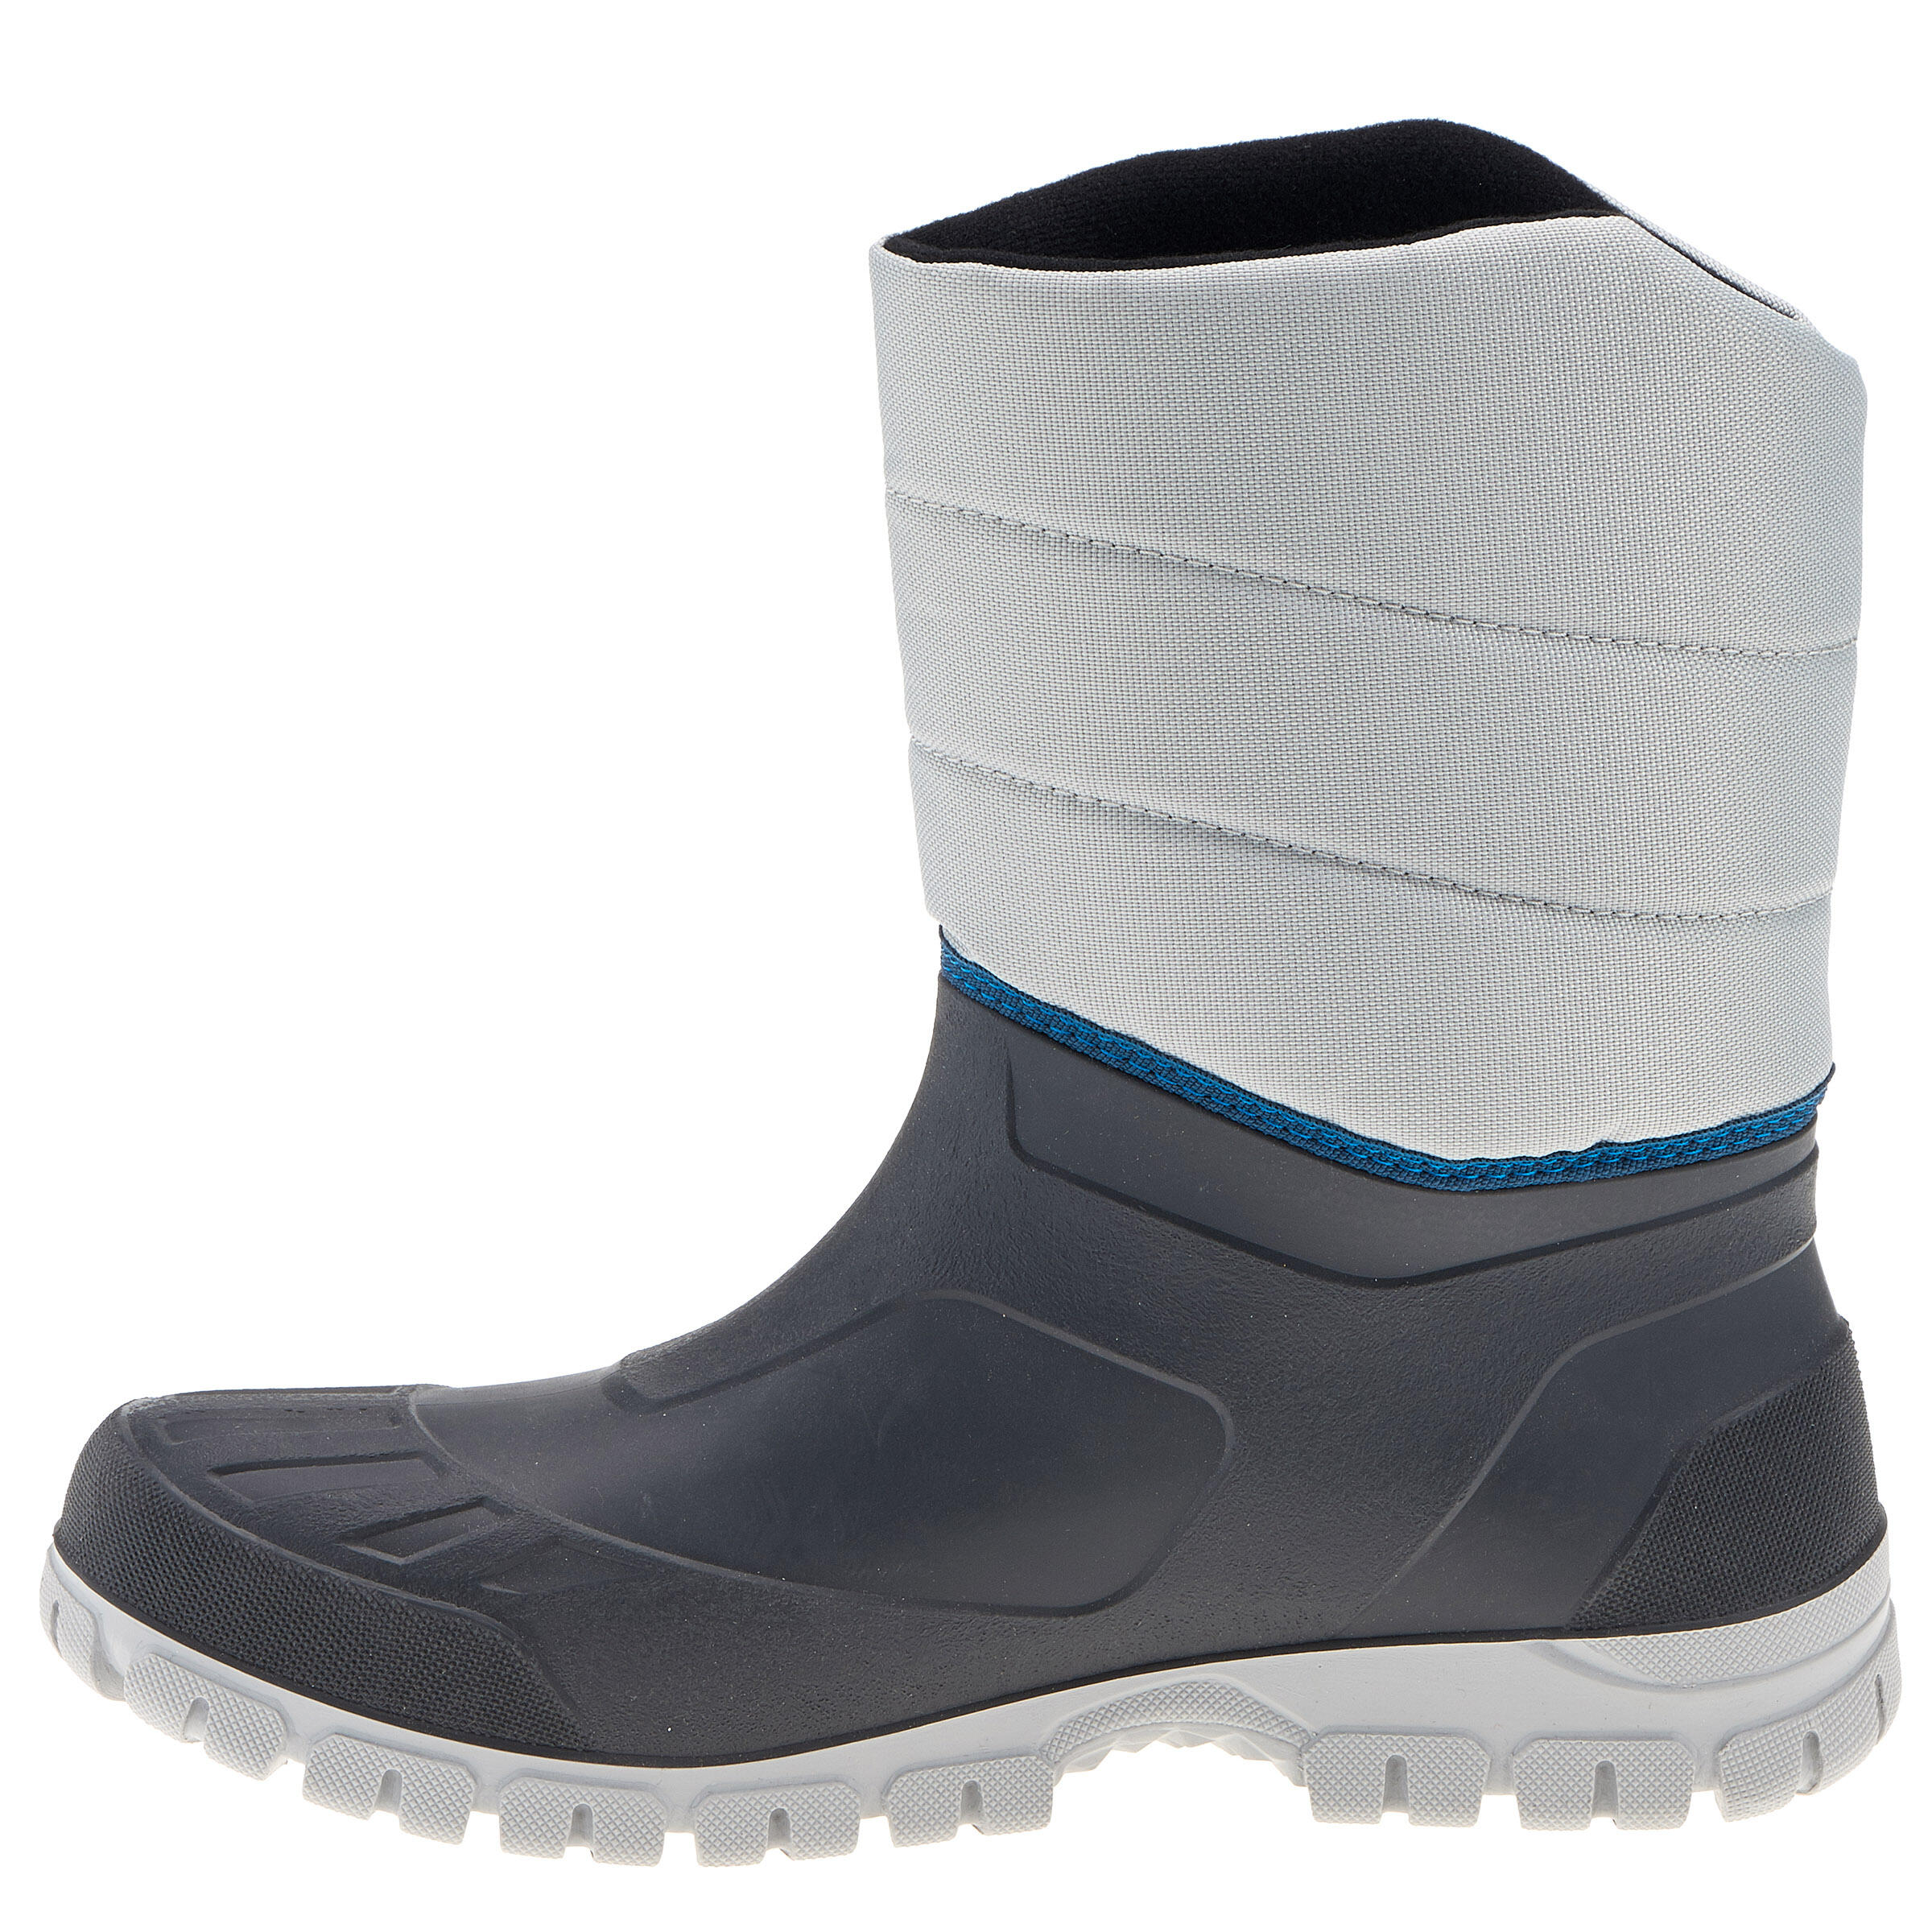 Arpenaz 50 Warm waterproof men's hiking boots - Grey 13/14